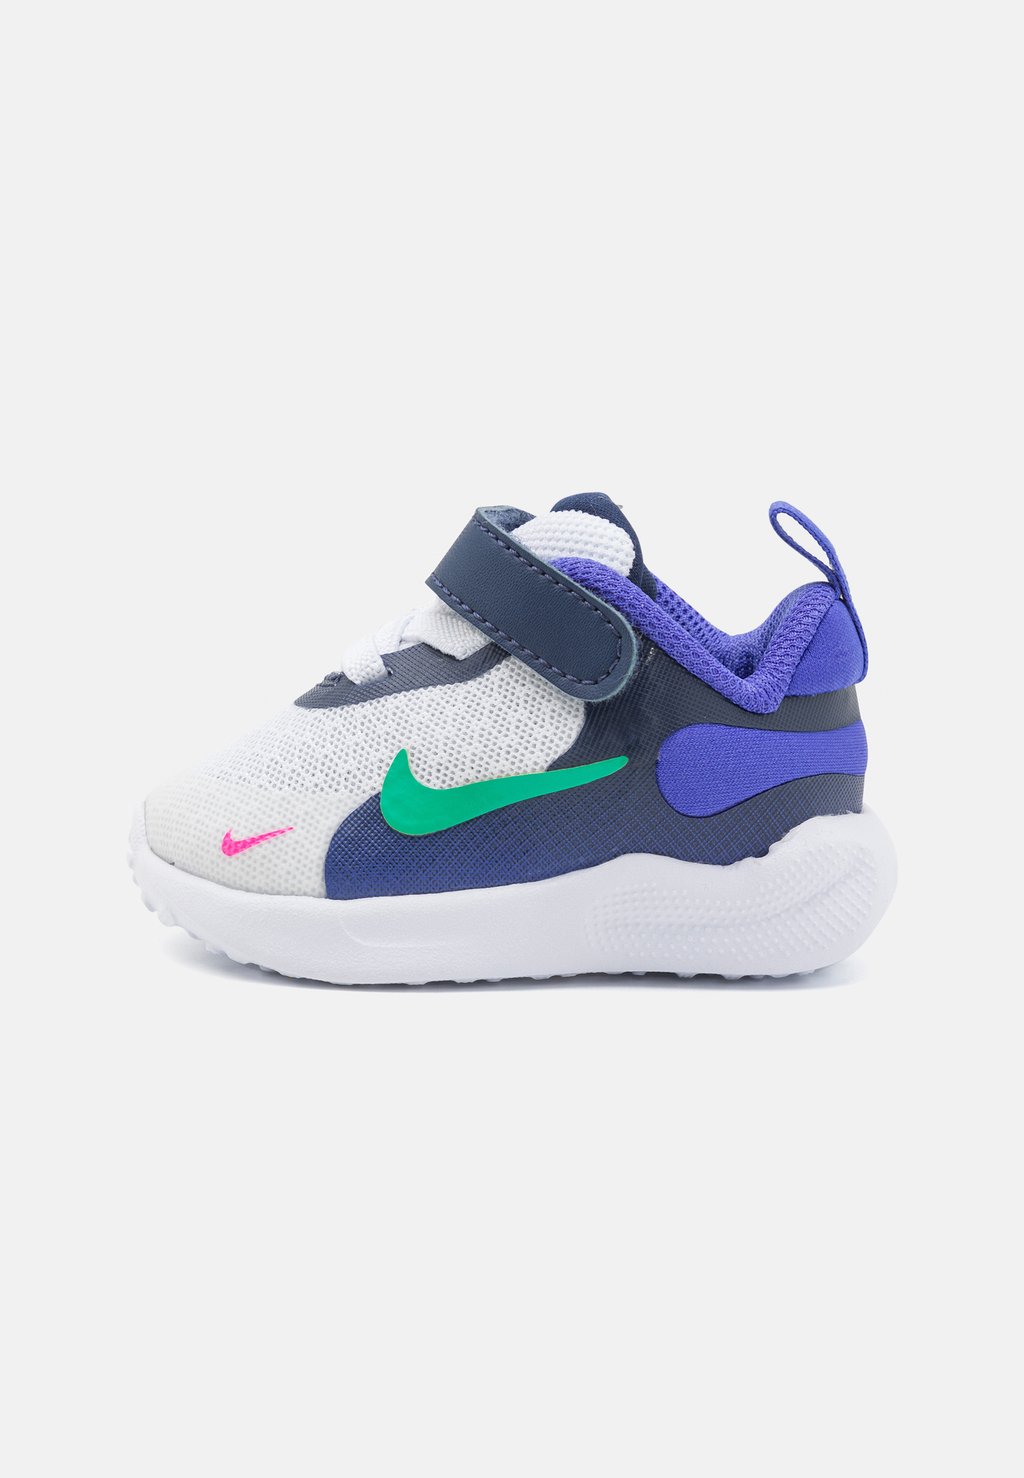 Нейтральные кроссовки Revolution 7 Unisex Nike, цвет white/stadium green/persian violet/midnight navy